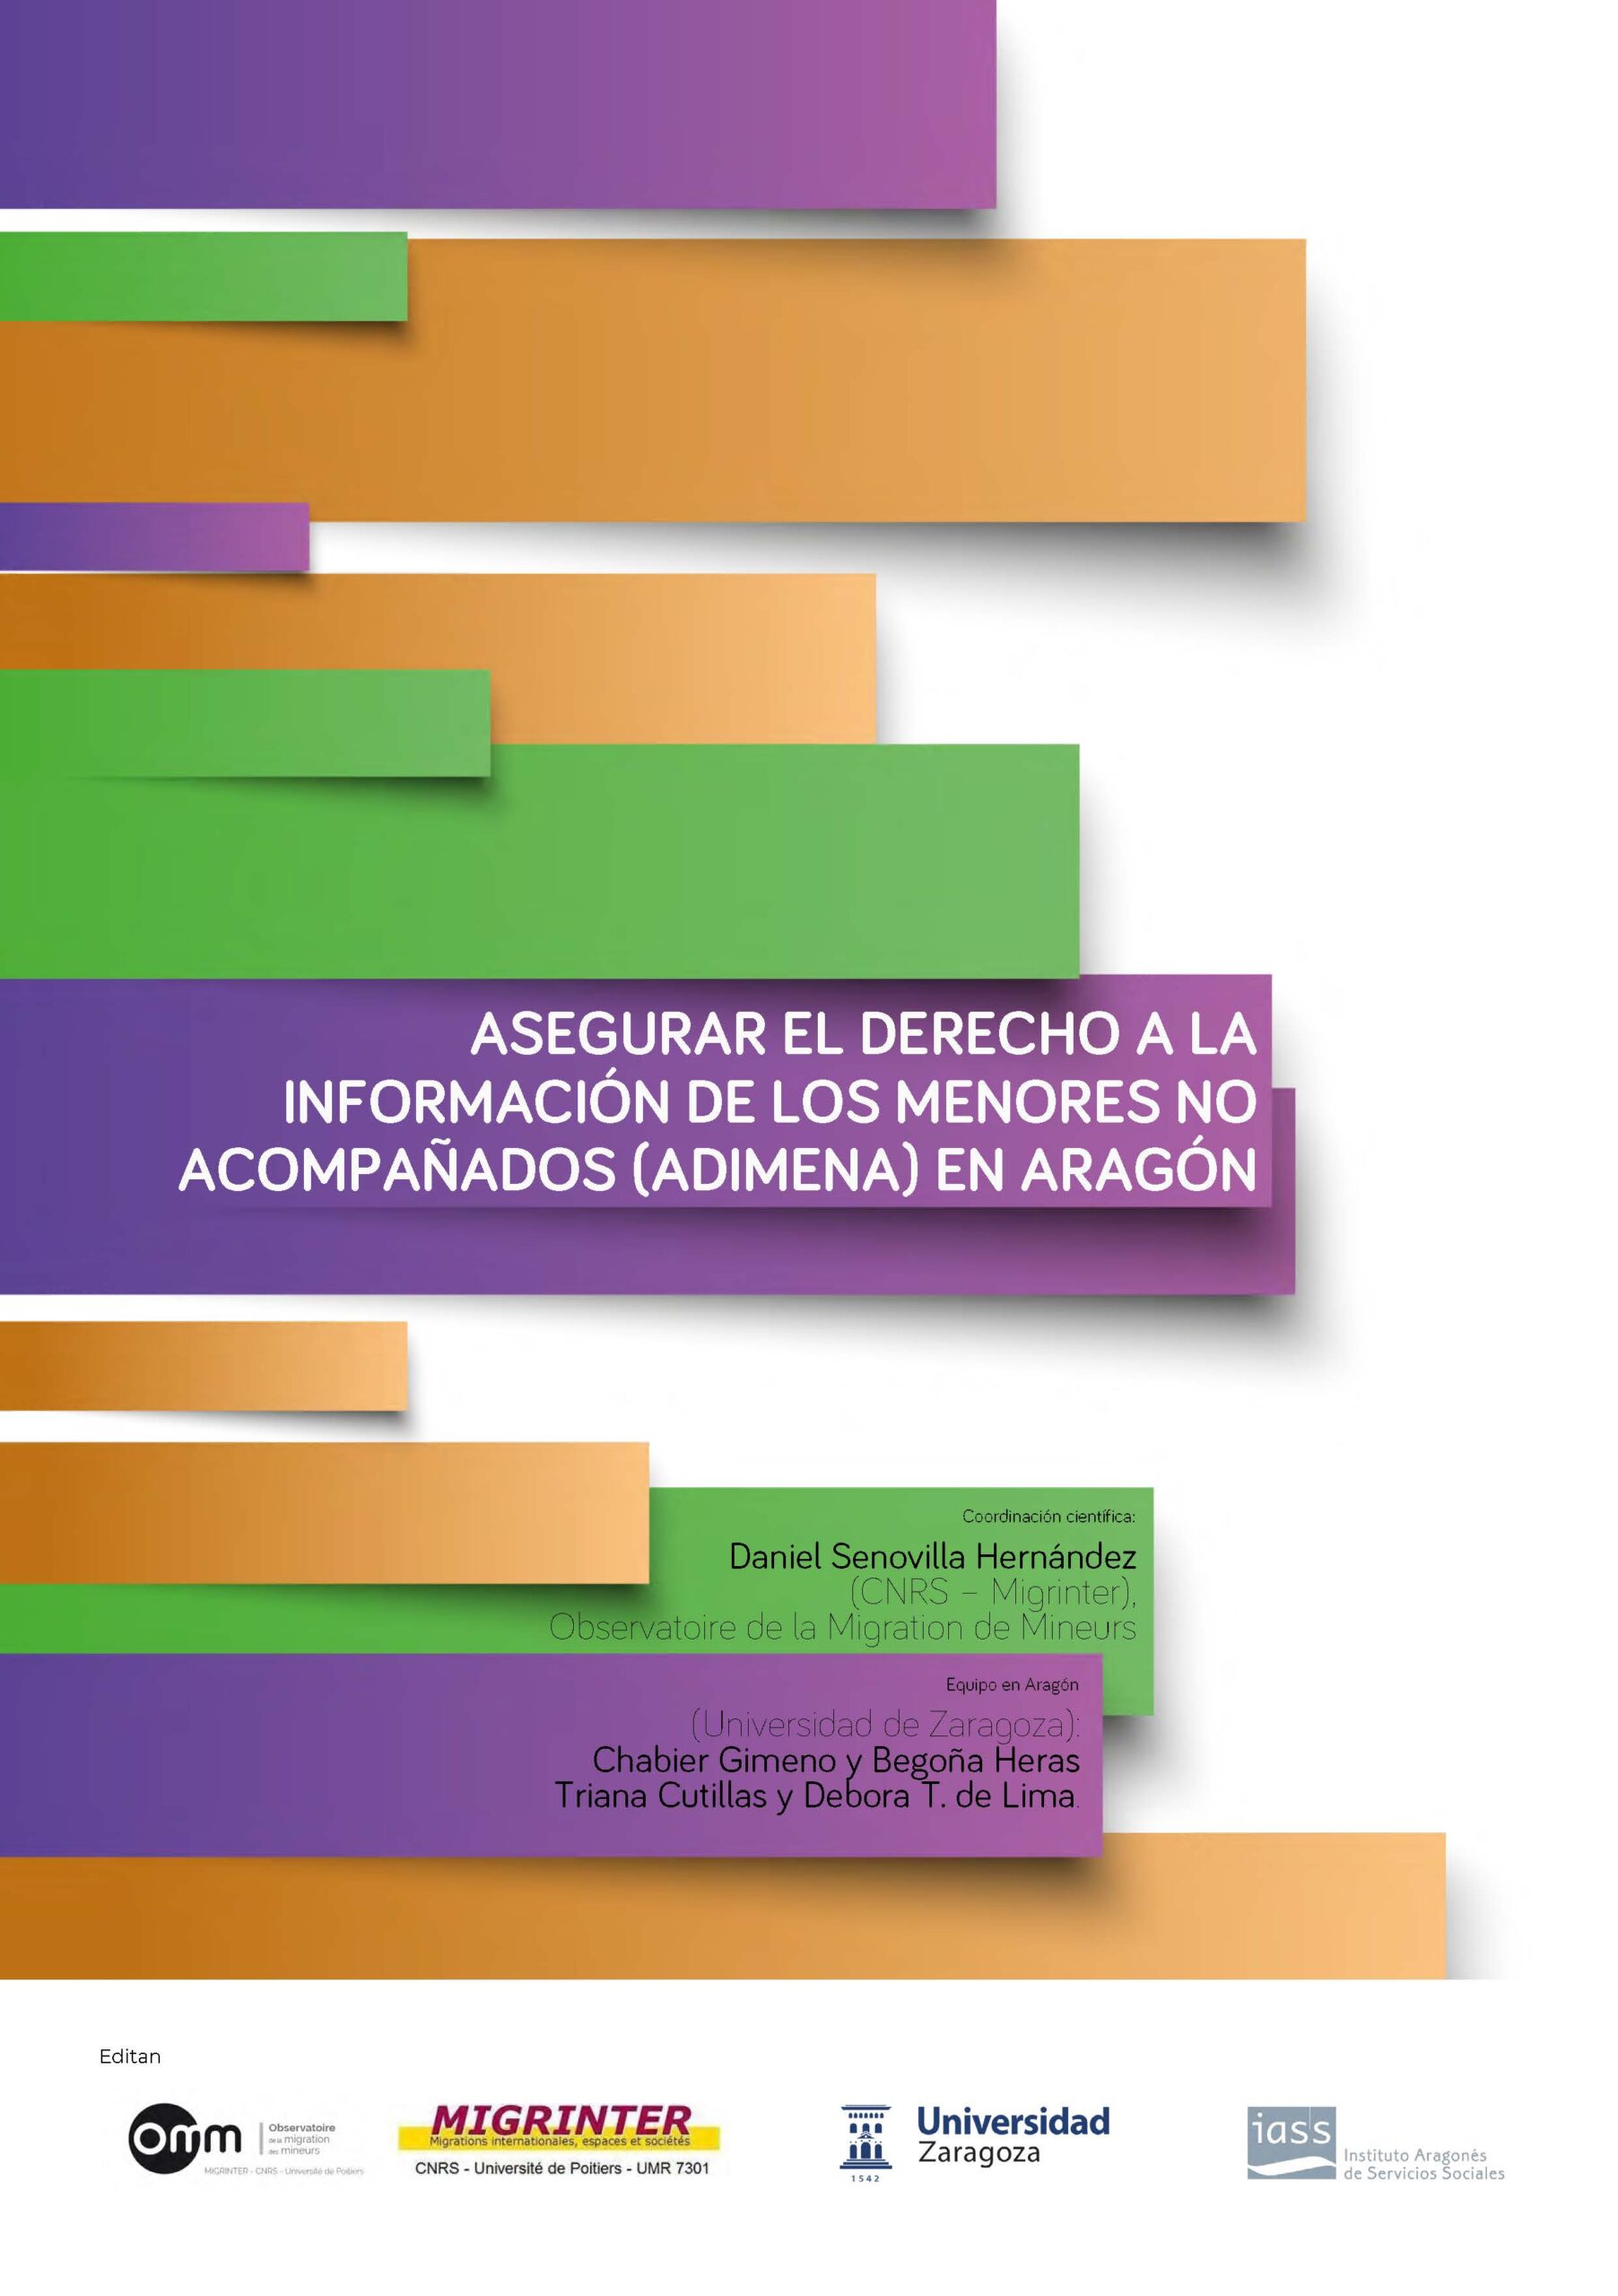 Informe del proyecto “asegurar el Derecho a la Informacion de los Menores No Acompañados” (ADIMENA) en Aragon, Espagne.